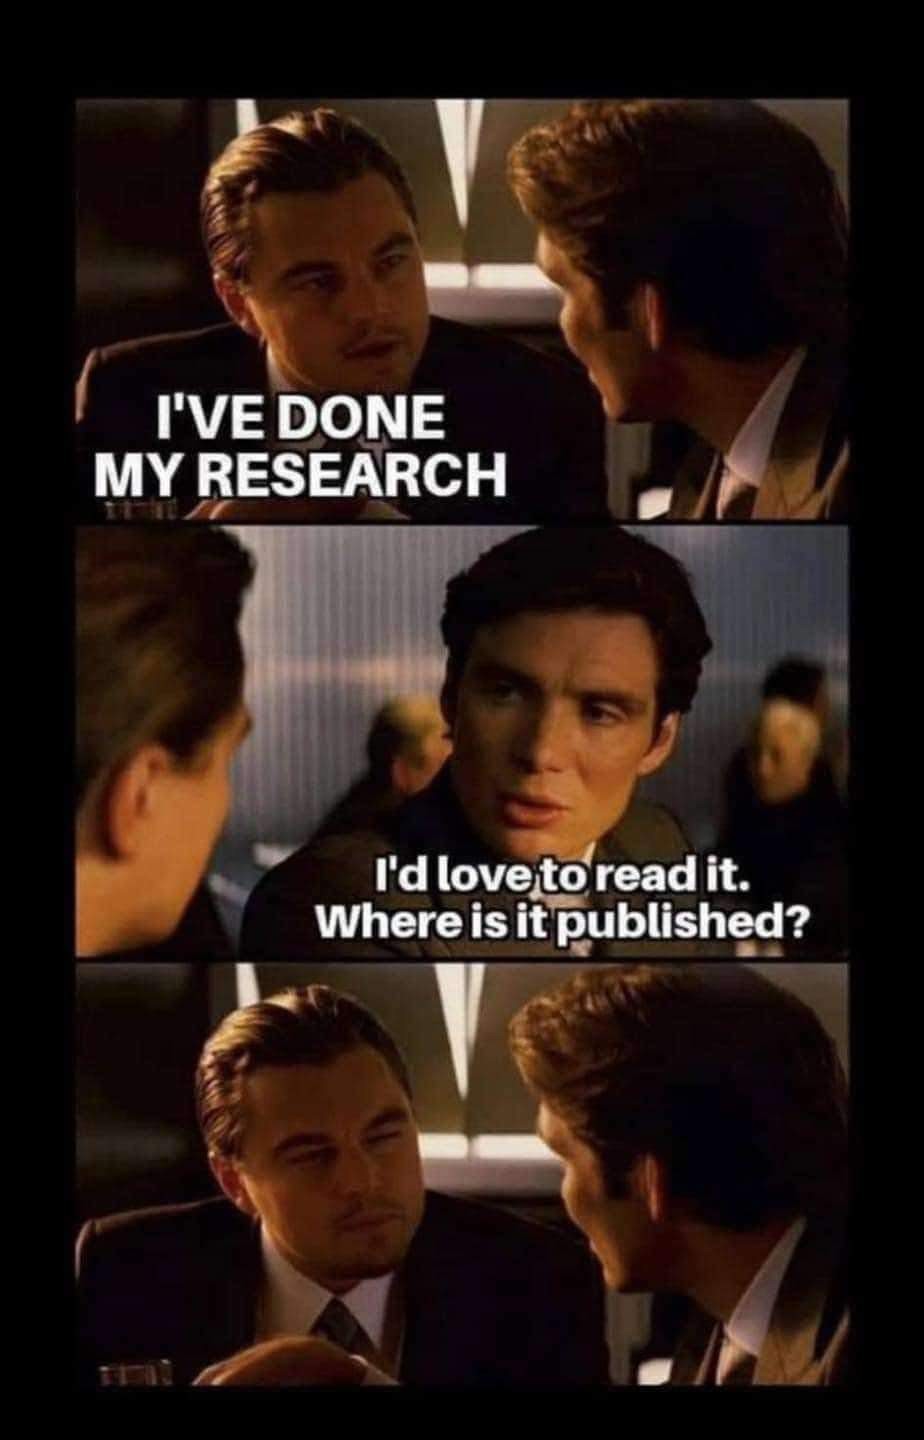 Just let me read your research plz - meme